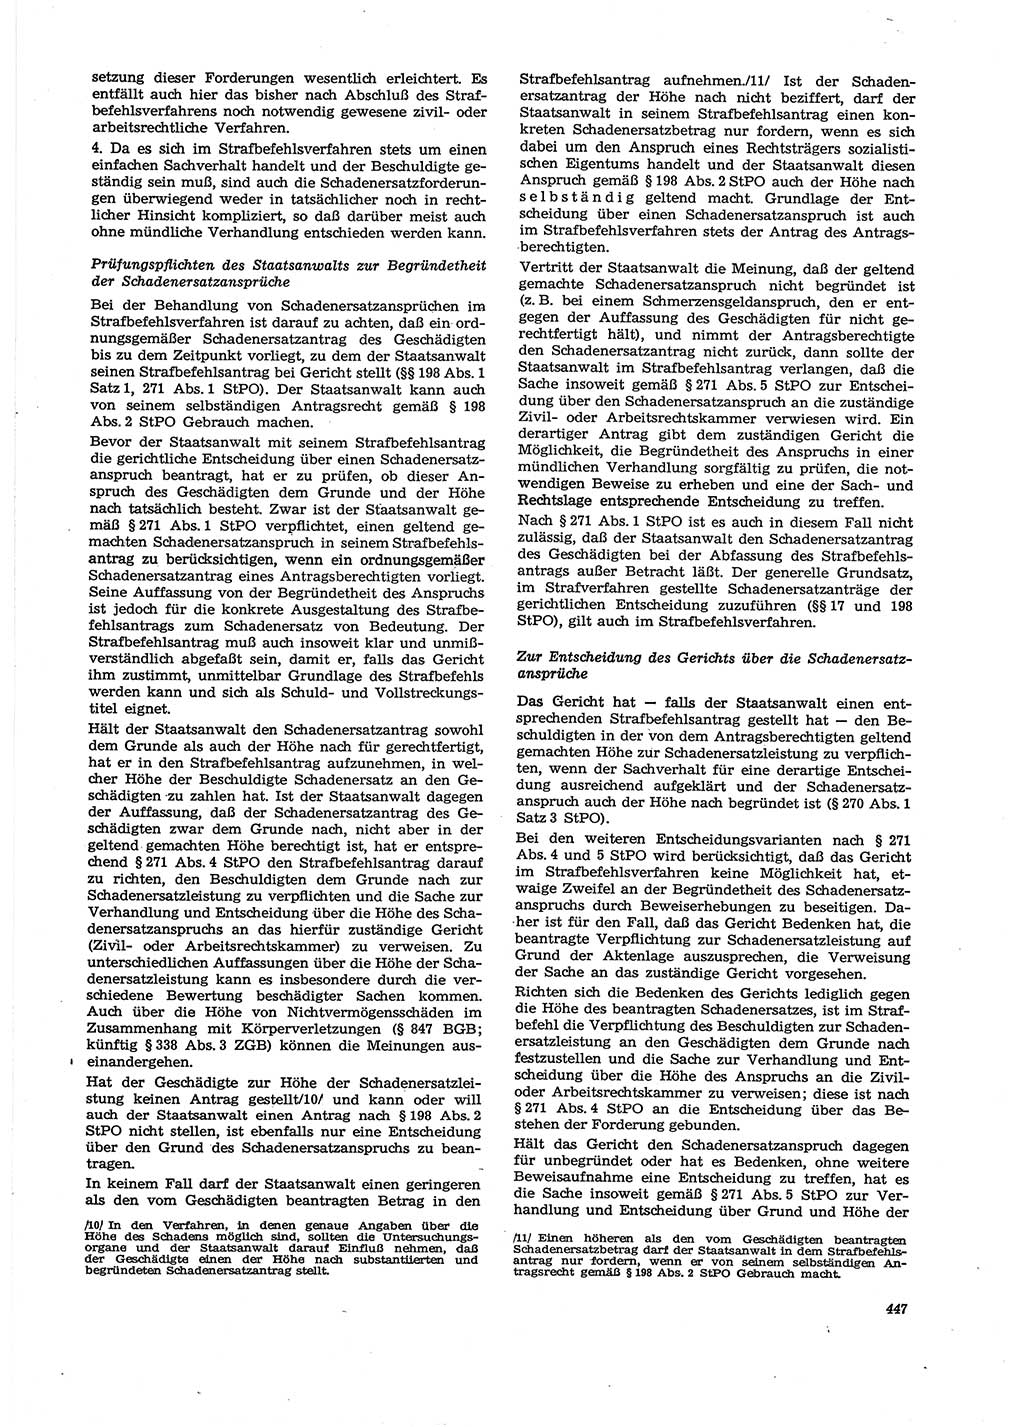 Neue Justiz (NJ), Zeitschrift für Recht und Rechtswissenschaft [Deutsche Demokratische Republik (DDR)], 29. Jahrgang 1975, Seite 447 (NJ DDR 1975, S. 447)